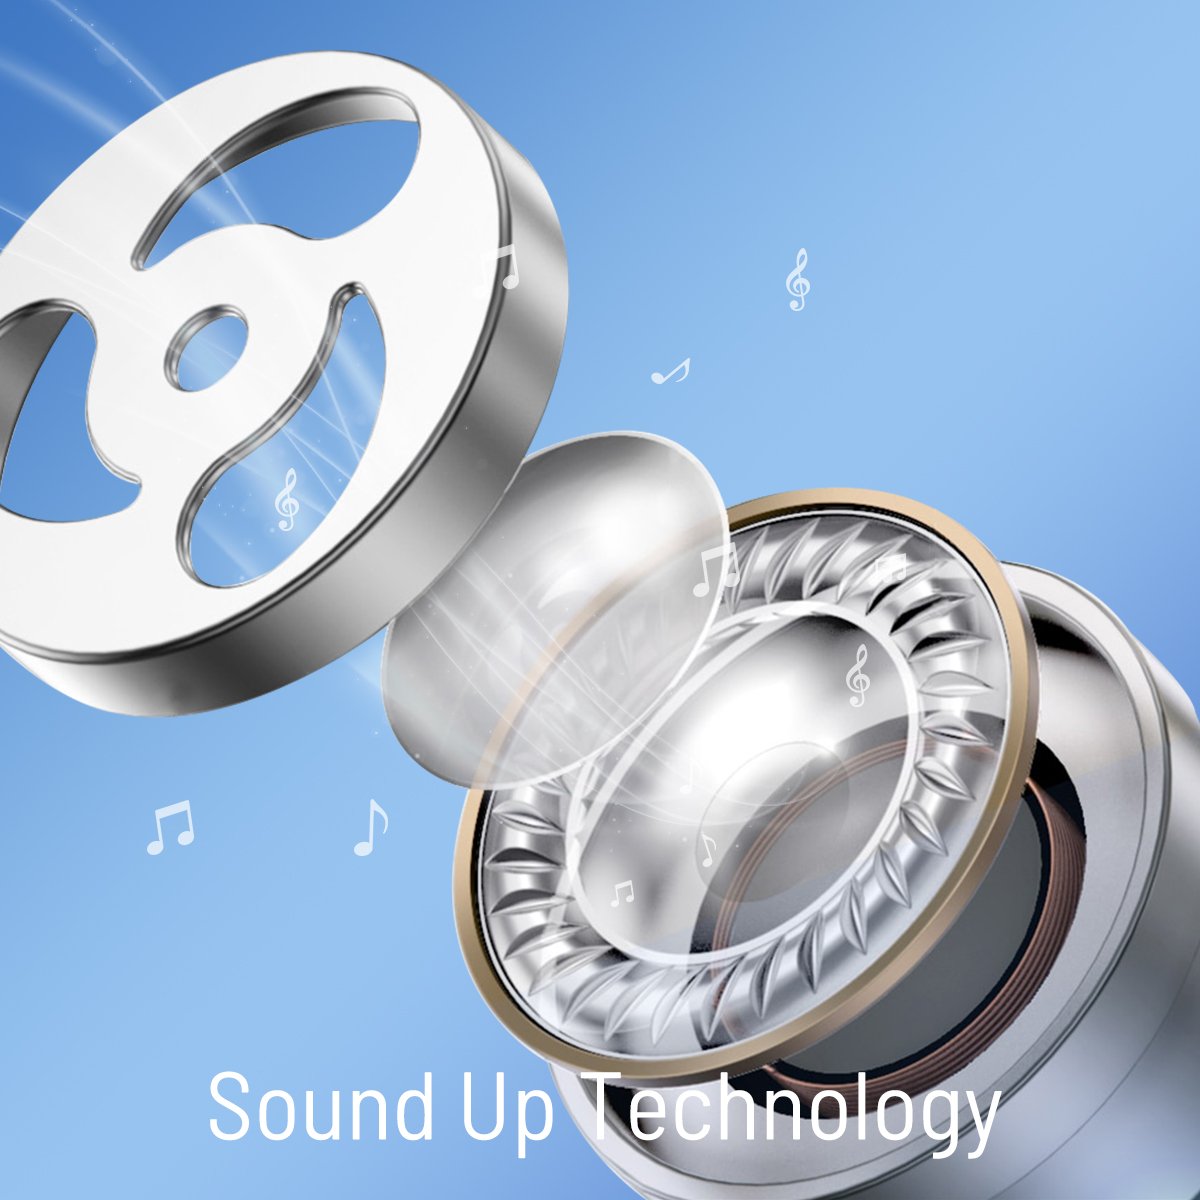 Tai Nghe TWS Earbuds SoundPeats Freedots Bluetooth 5.0, chống nước IPX7, thời gian sử dụng 16h - Hàng chính hãng